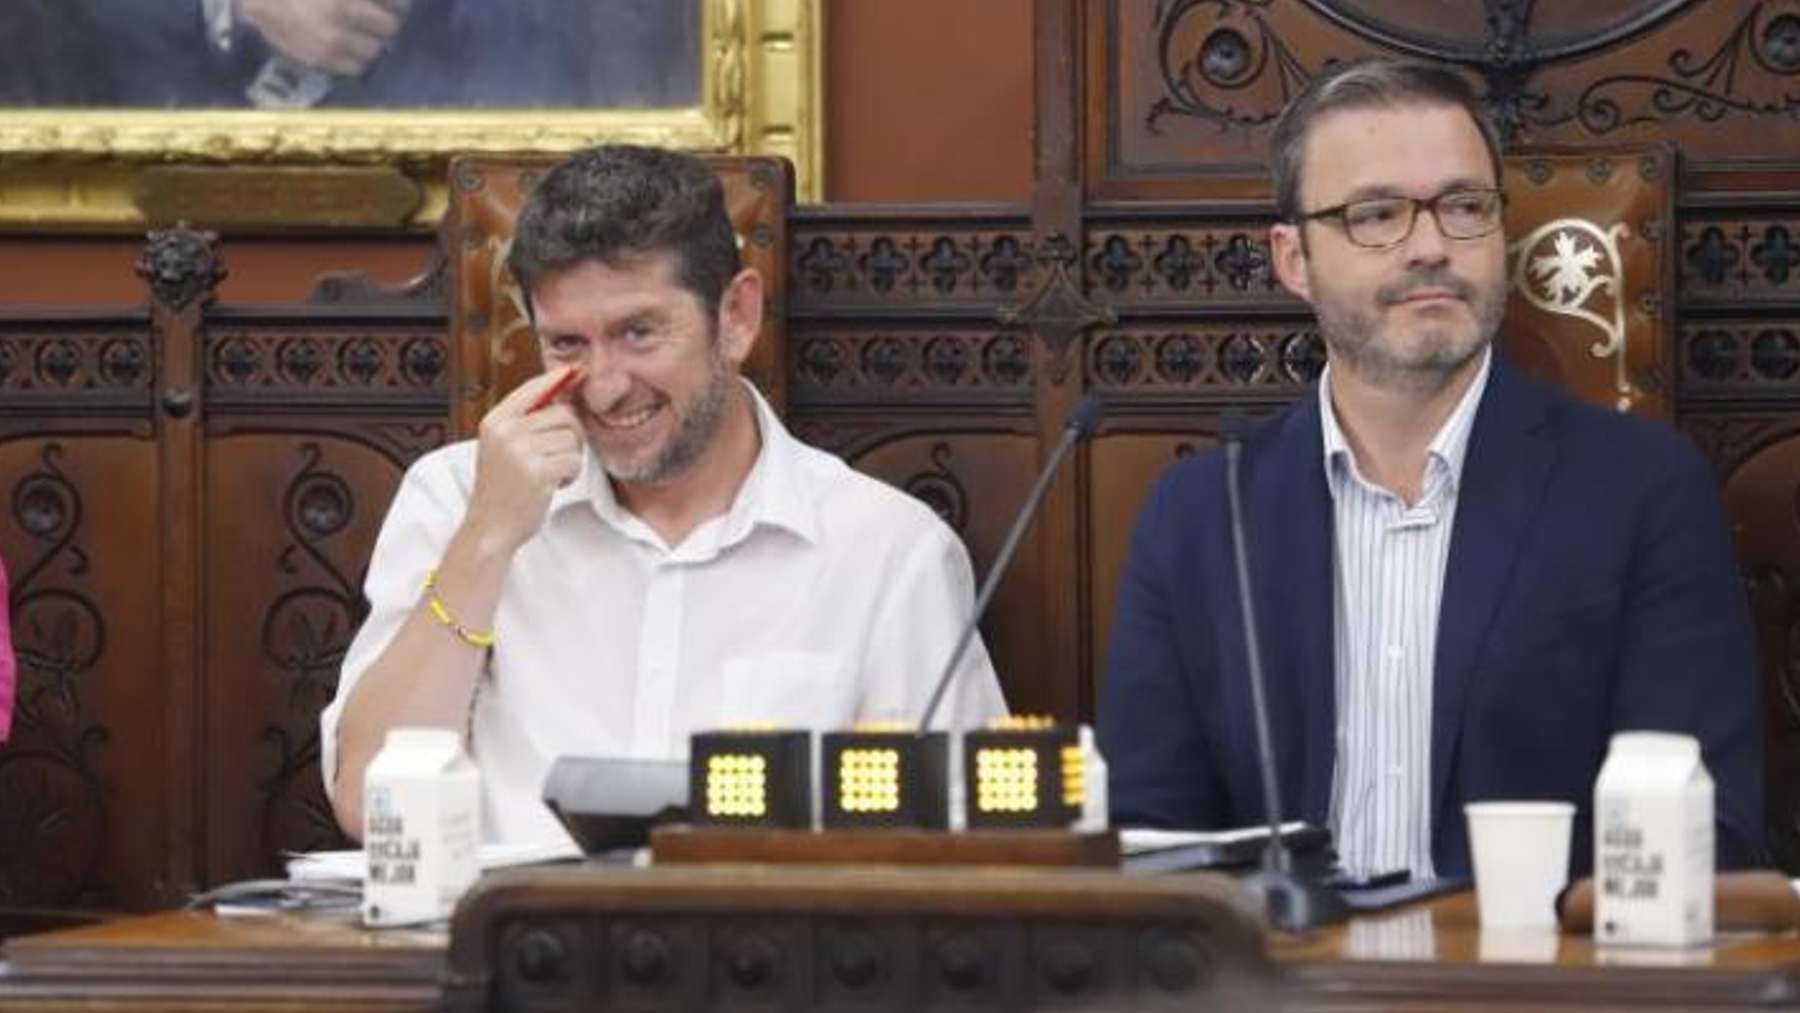 El concejal de Podemos, Alberto Jarabo, junto al alcalde socialista de Palma, José Hila.